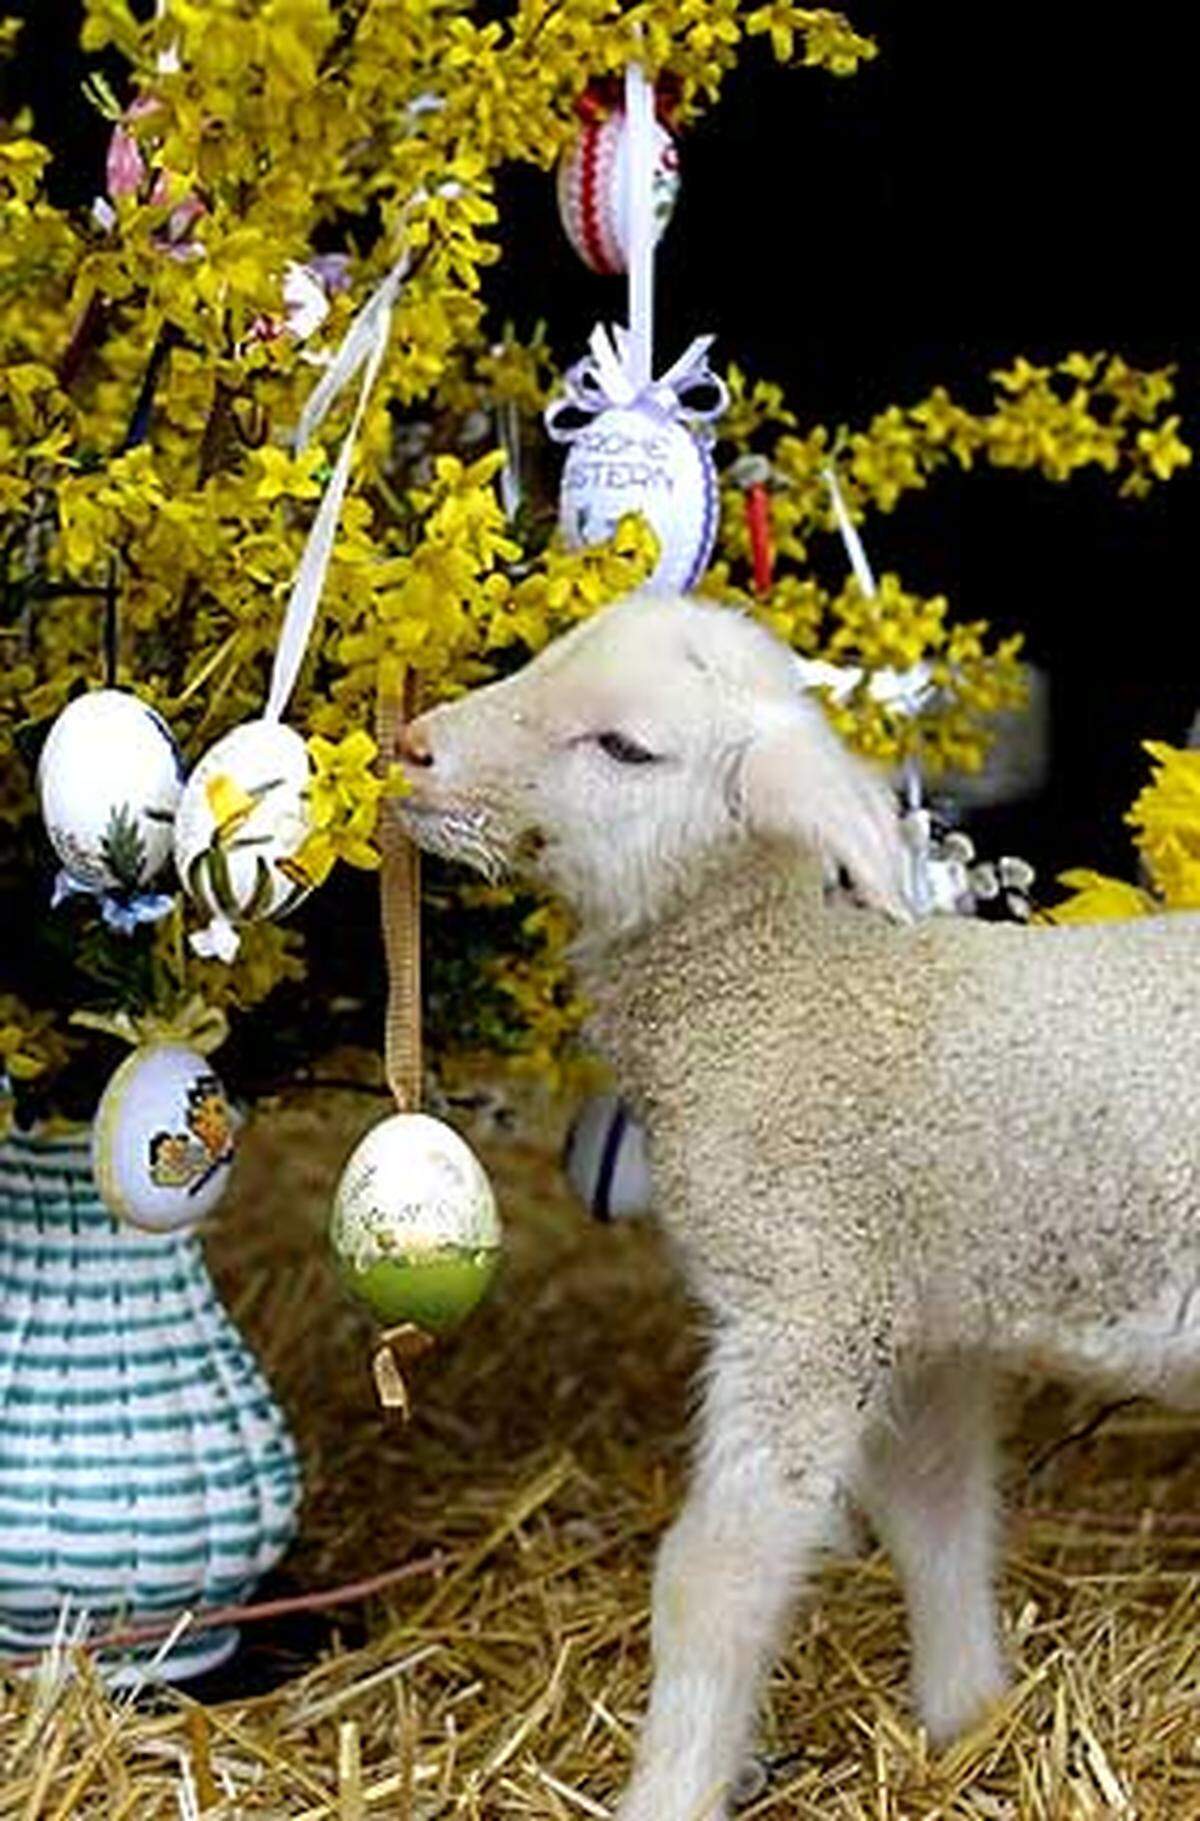 Ostern ist kein fixer Termin. Man feiert zwar stets zwischen dem 22. März und 25. April Ostern, allerdings sind die Festtage jedes Jahr zu einem anderen Datum angesiedelt. Der Ostersonntag fällt auf den ersten Sonntag nach dem ersten Vollmond nach dem Frühlingsanfang am 21. März. Diese Festlegung geht auf das Konzil von Nizäa zurück.